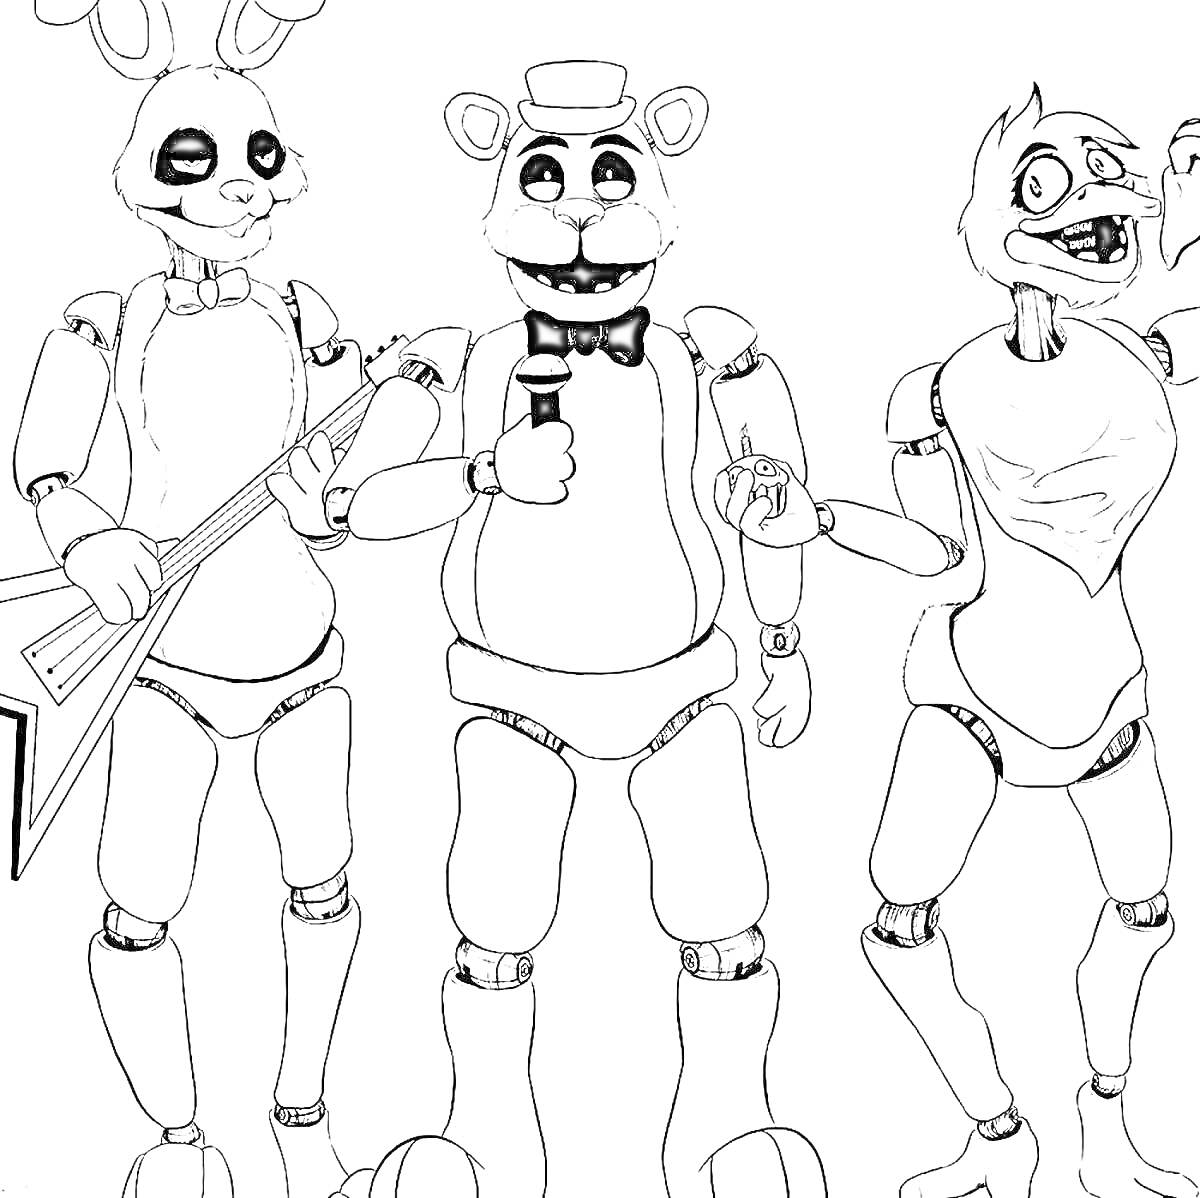 Раскраска Три аниматроника - заяц с гитарой, Фредди с микрофоном, цыпленок